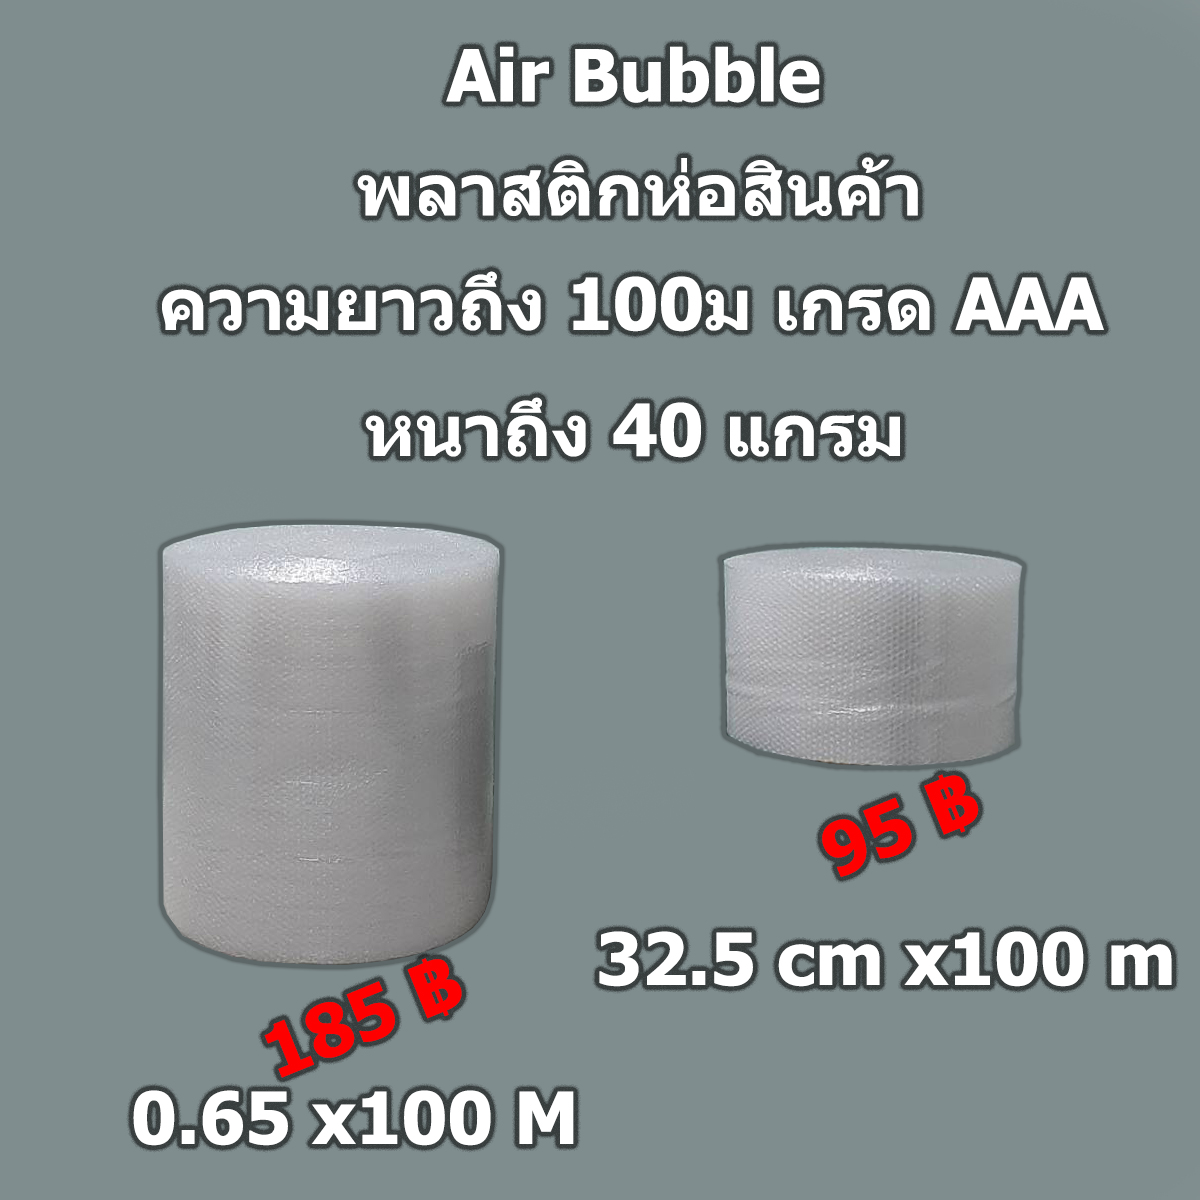 บับเบิ้ล พลาสติกกันกระแทก Air Bubble ยาว 100 เมตร  เหนียวทนไม่ขาดง่าย ความหนา 40 แกรม